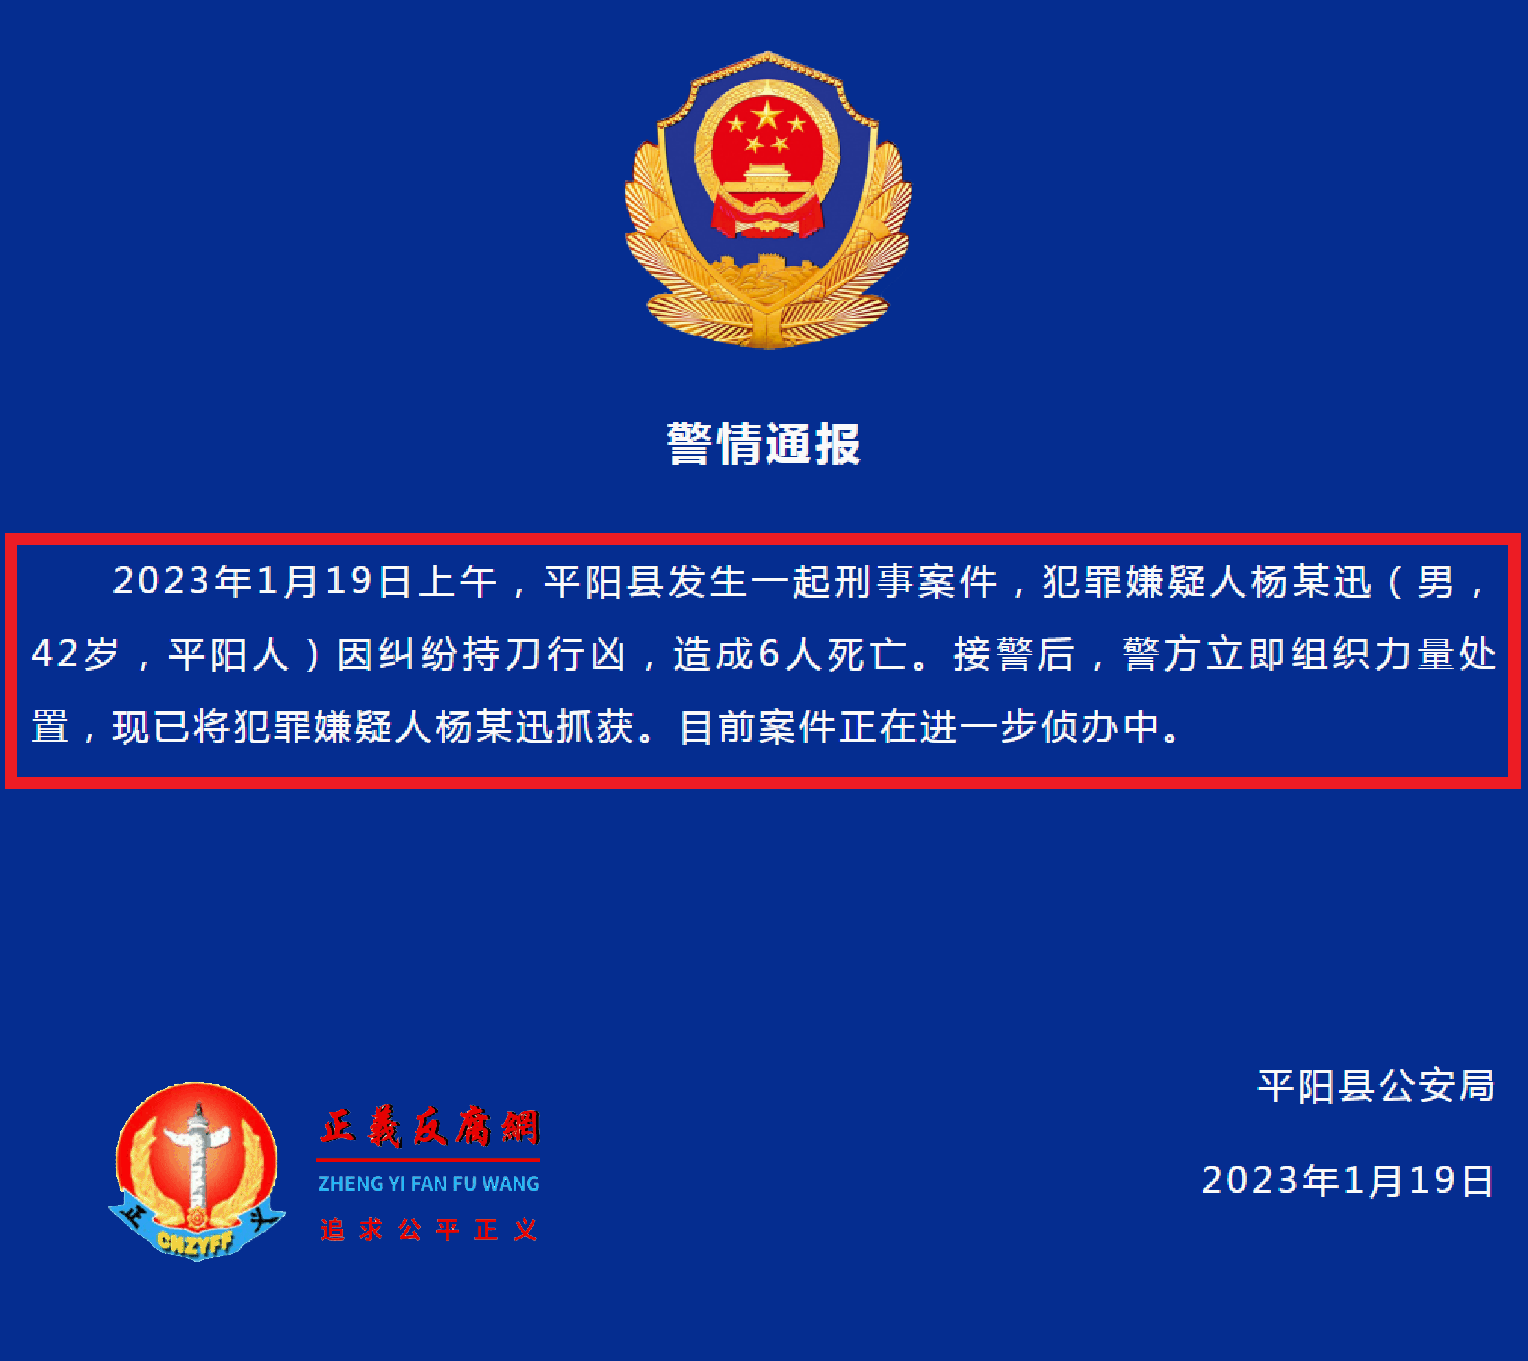 2023年1月19日，浙江平阳县公安局微信公众号上“警情通报”里总共还不到100个字。.png